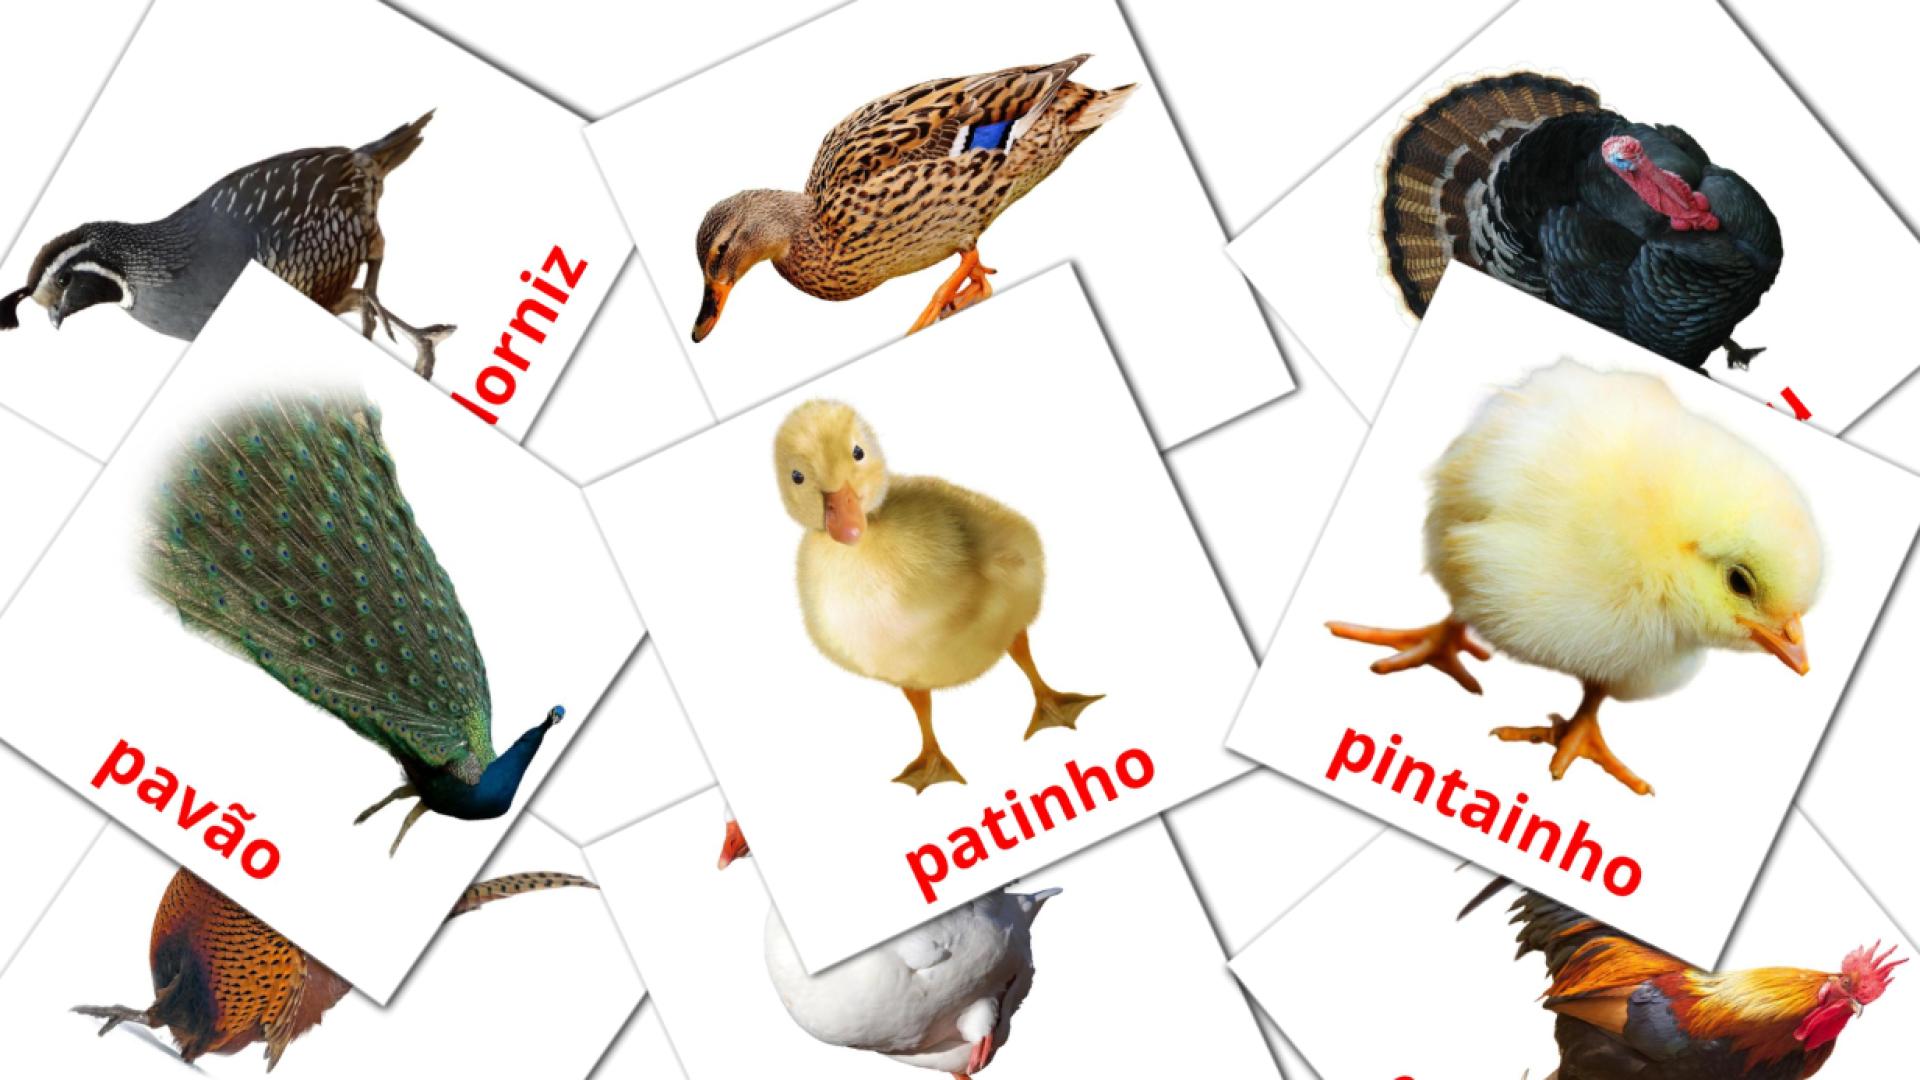 11 Bildkarten für Aves da Quinta